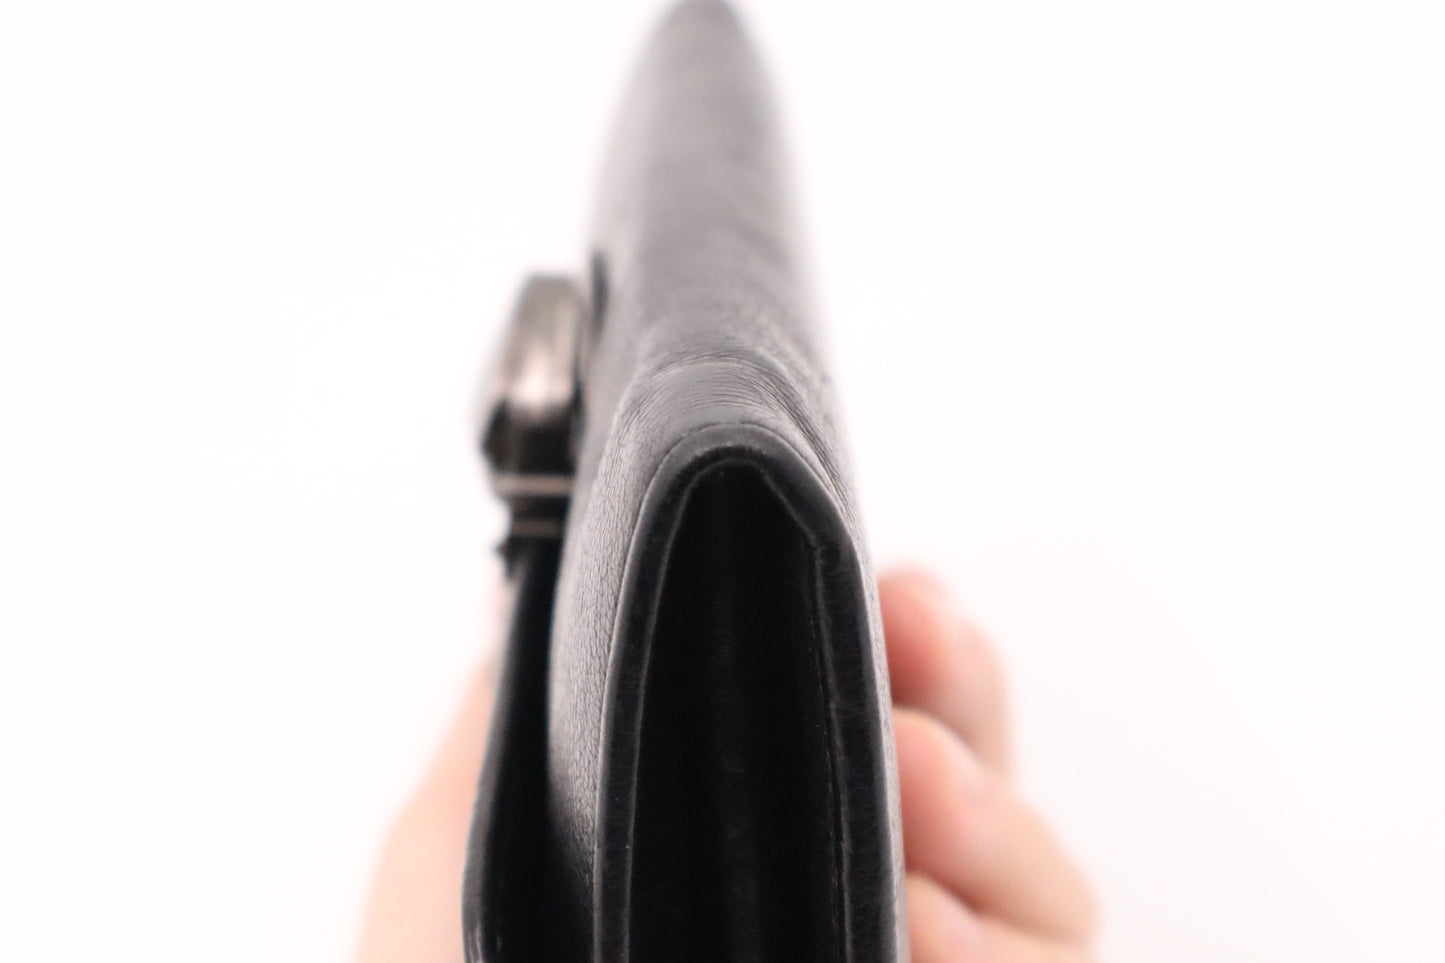 Prada Long Wallet in Black Leather